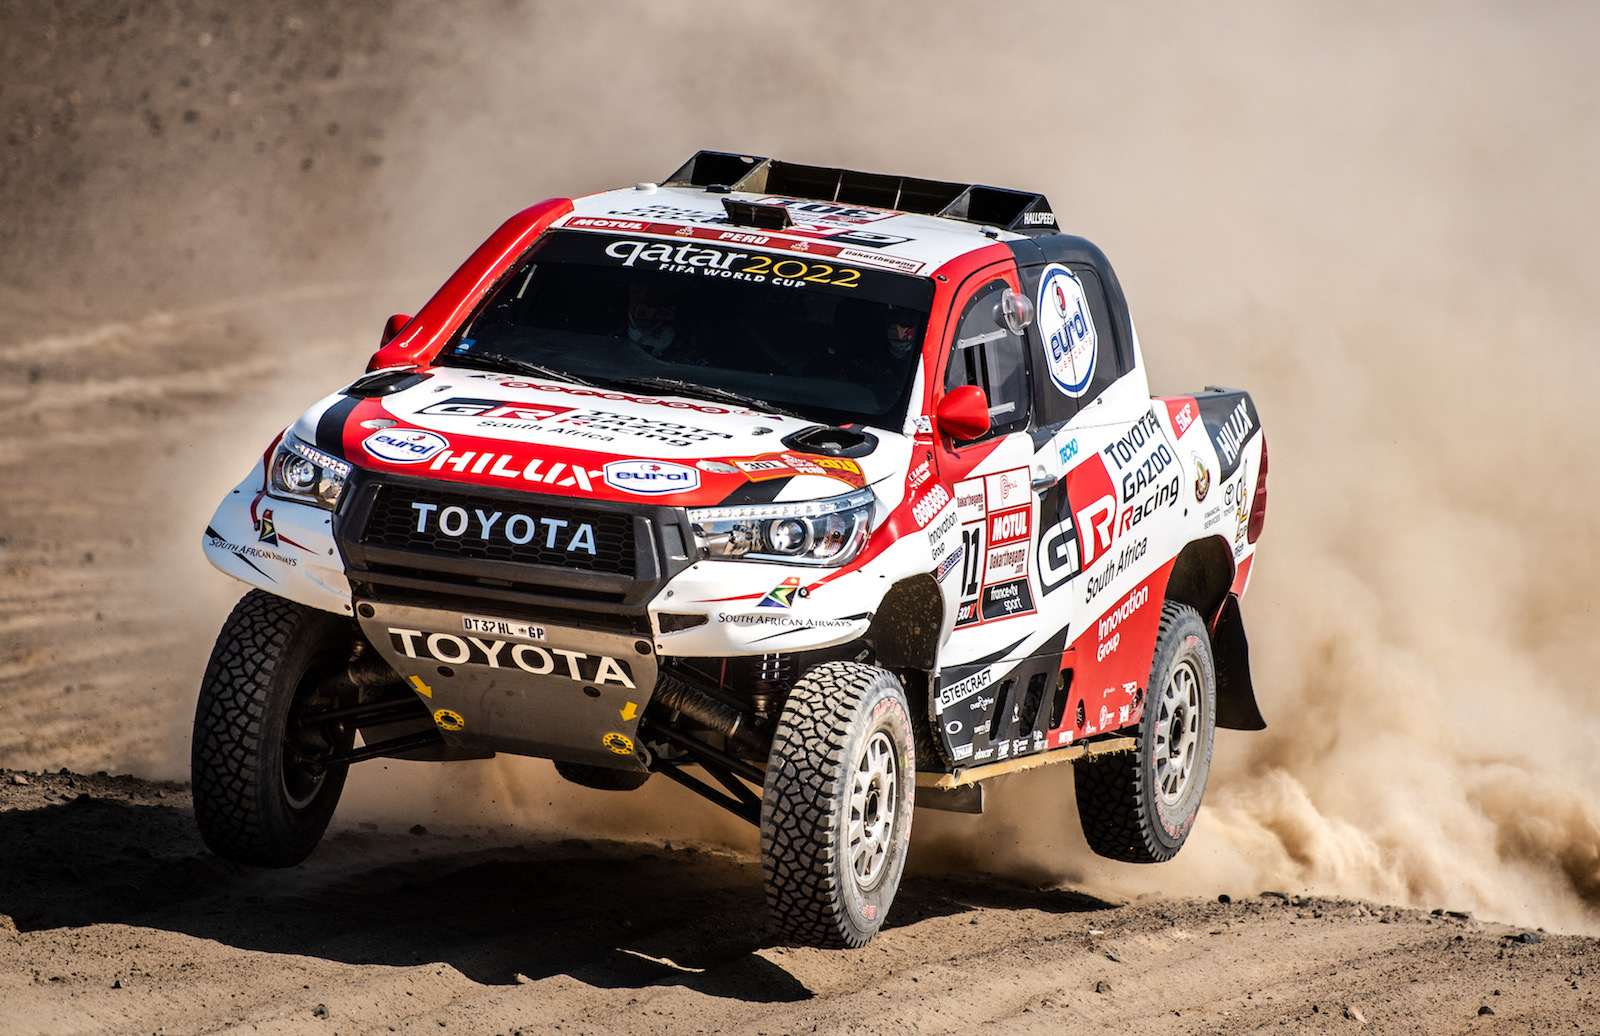 Toyota HiLux wins 2019 Dakar rally